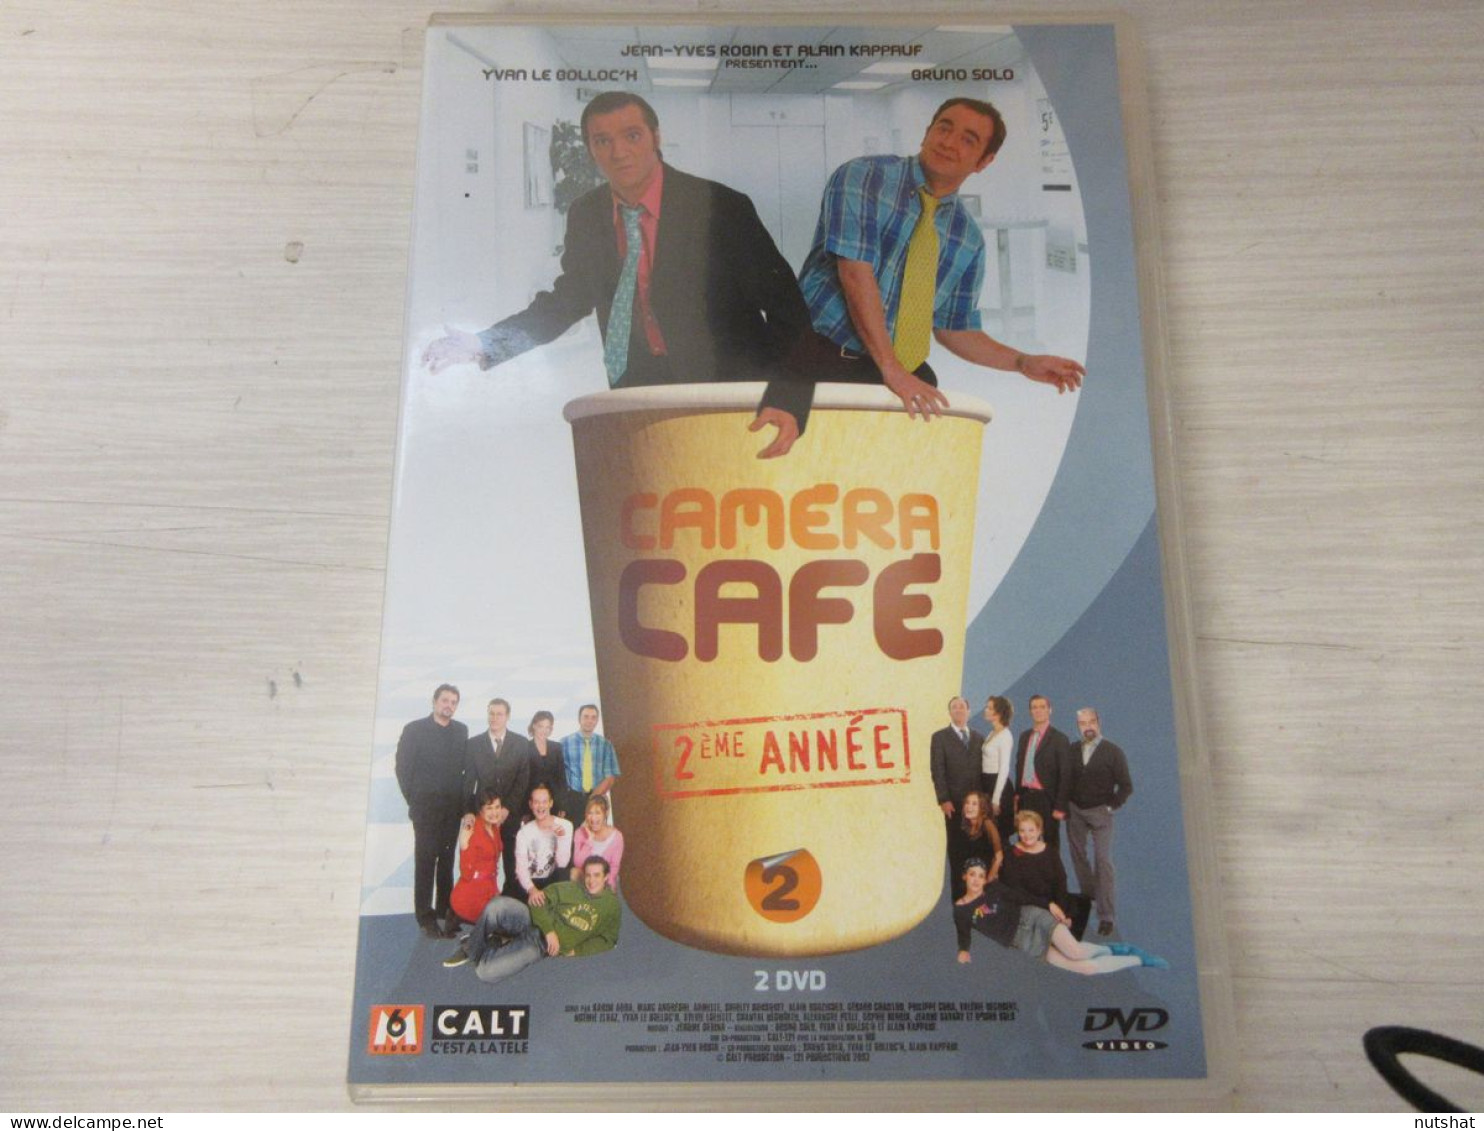 DVD SERIE TV CAMERA CAFE 2eme ANNEE Bruno SOLO Yvan Le BOLLOC'H 2xDVD 2002  - Series Y Programas De TV